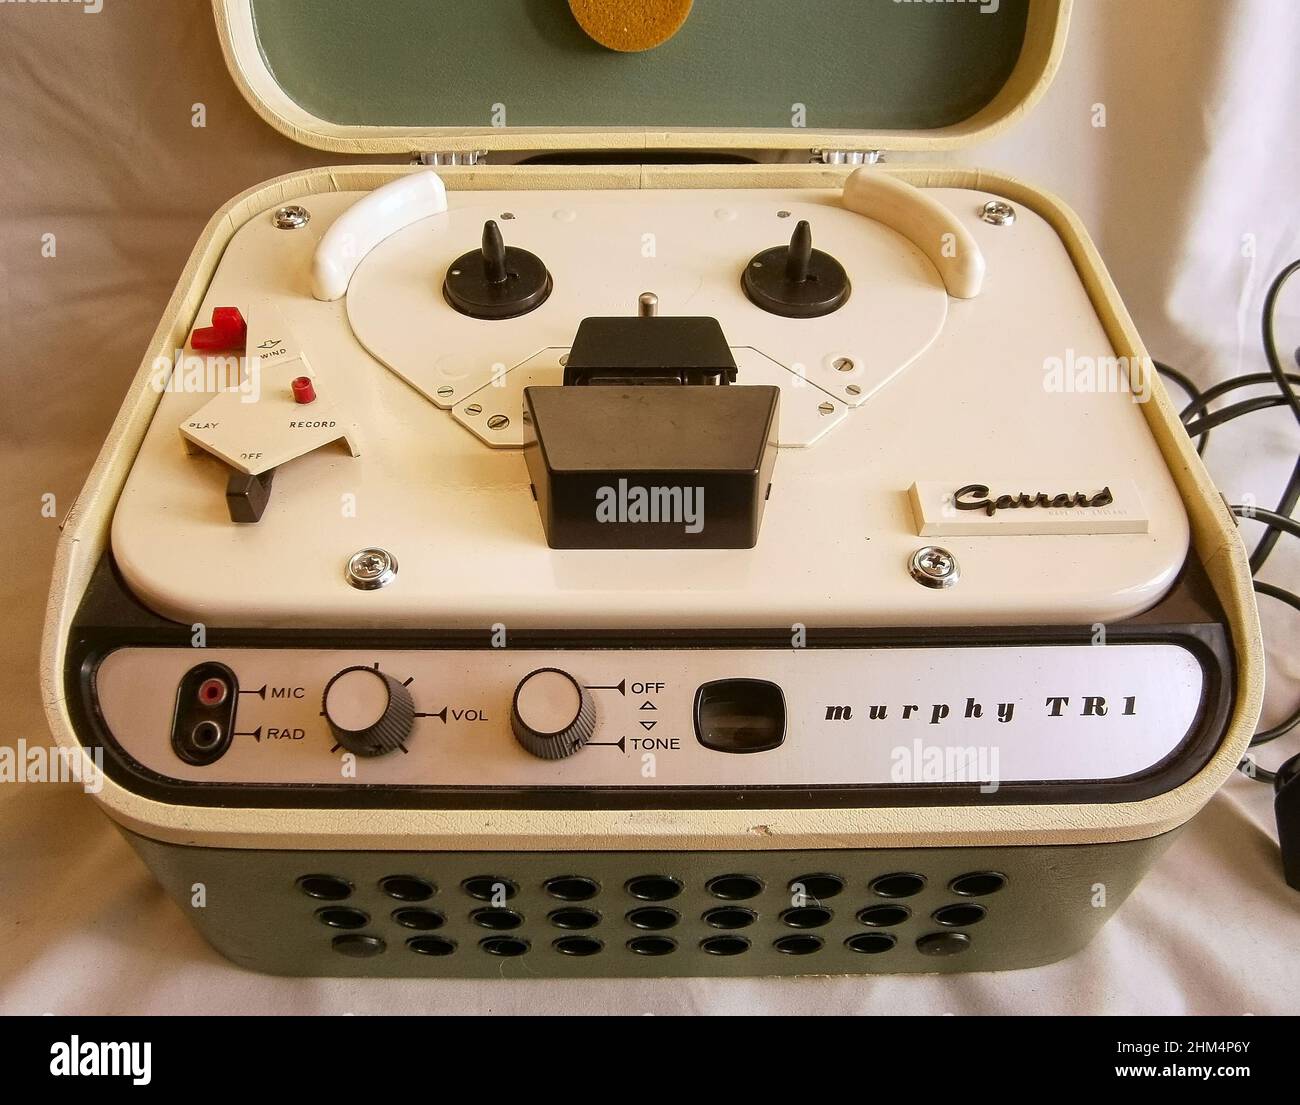 Murphy TR1 vintage bobine à bobine magnétophone de bande fait en Angleterre au début de 1960s Banque D'Images